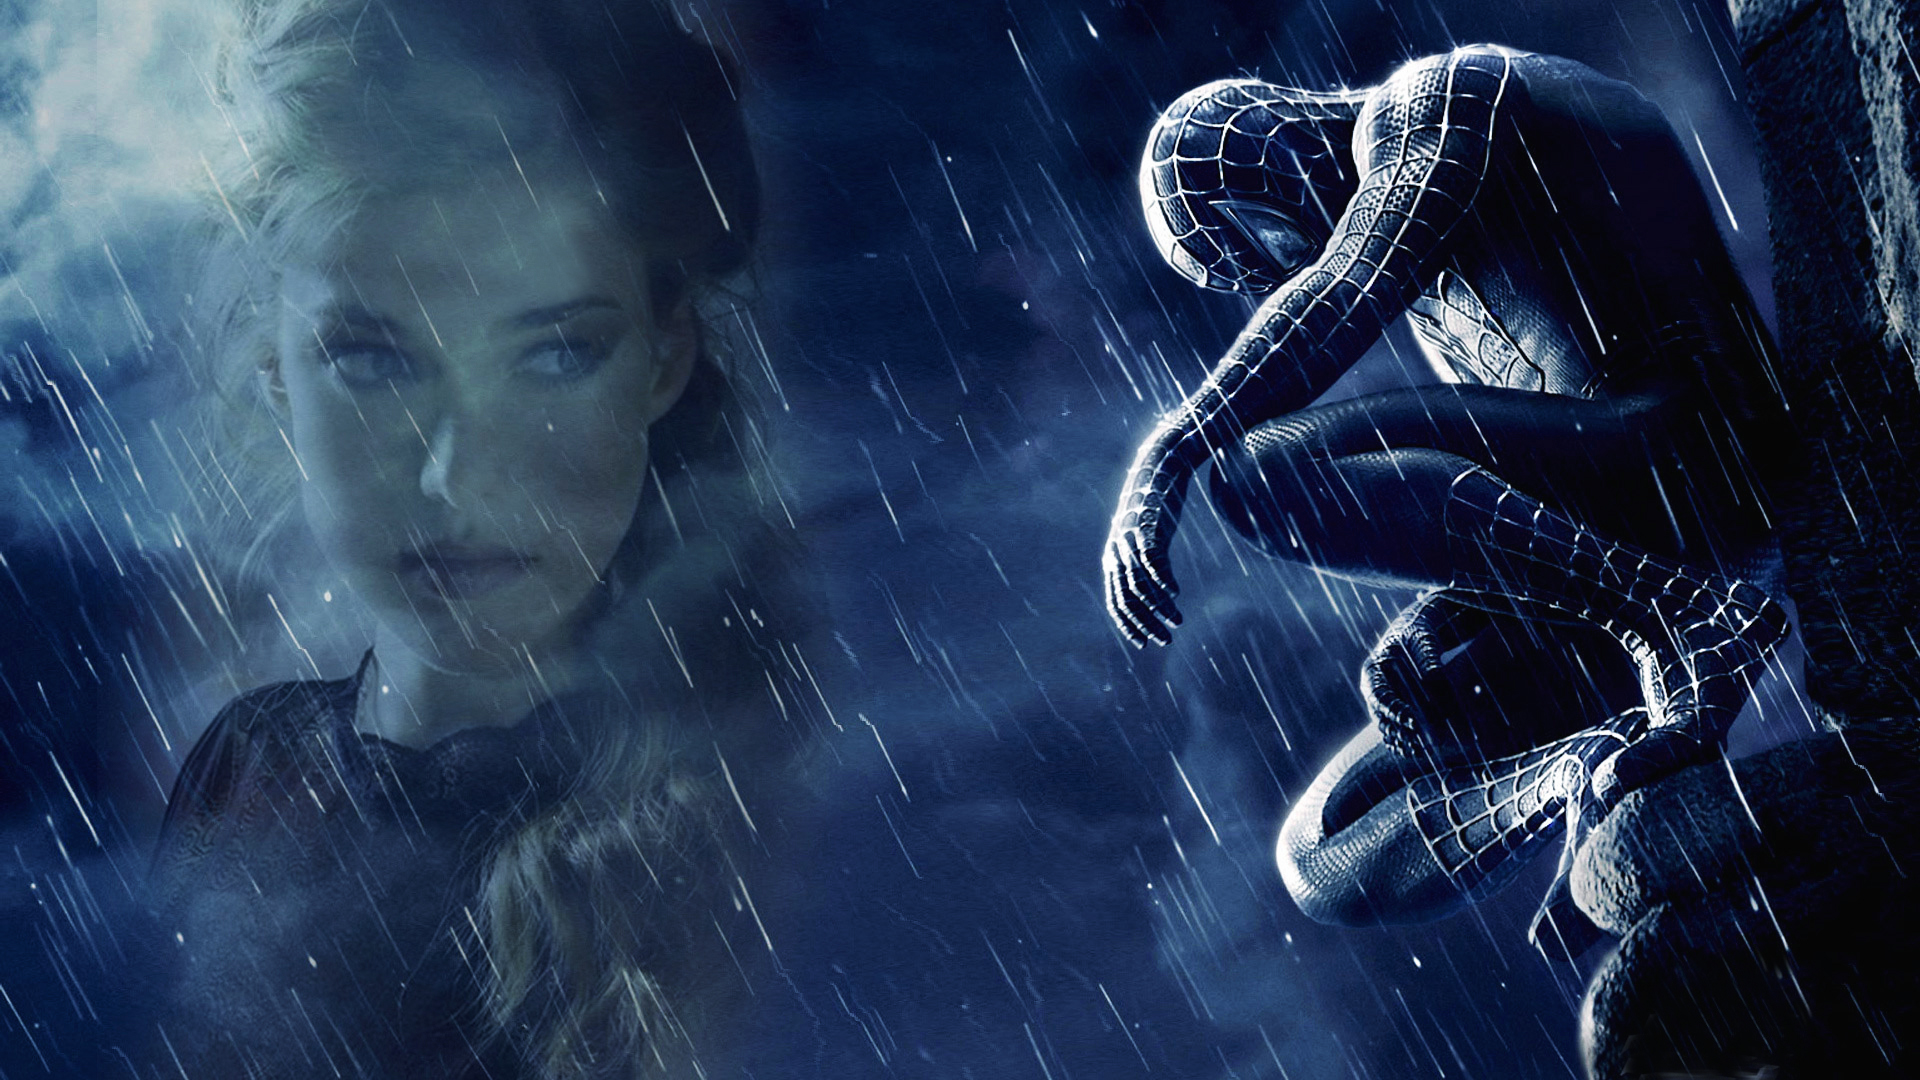 Название sophie rain spider man video original. Человек-паук 3 враг в отражении. Человек паук 3 под дождем. Человек-паук 3 враг в отражении Постер. Черный человек паук под дождем.